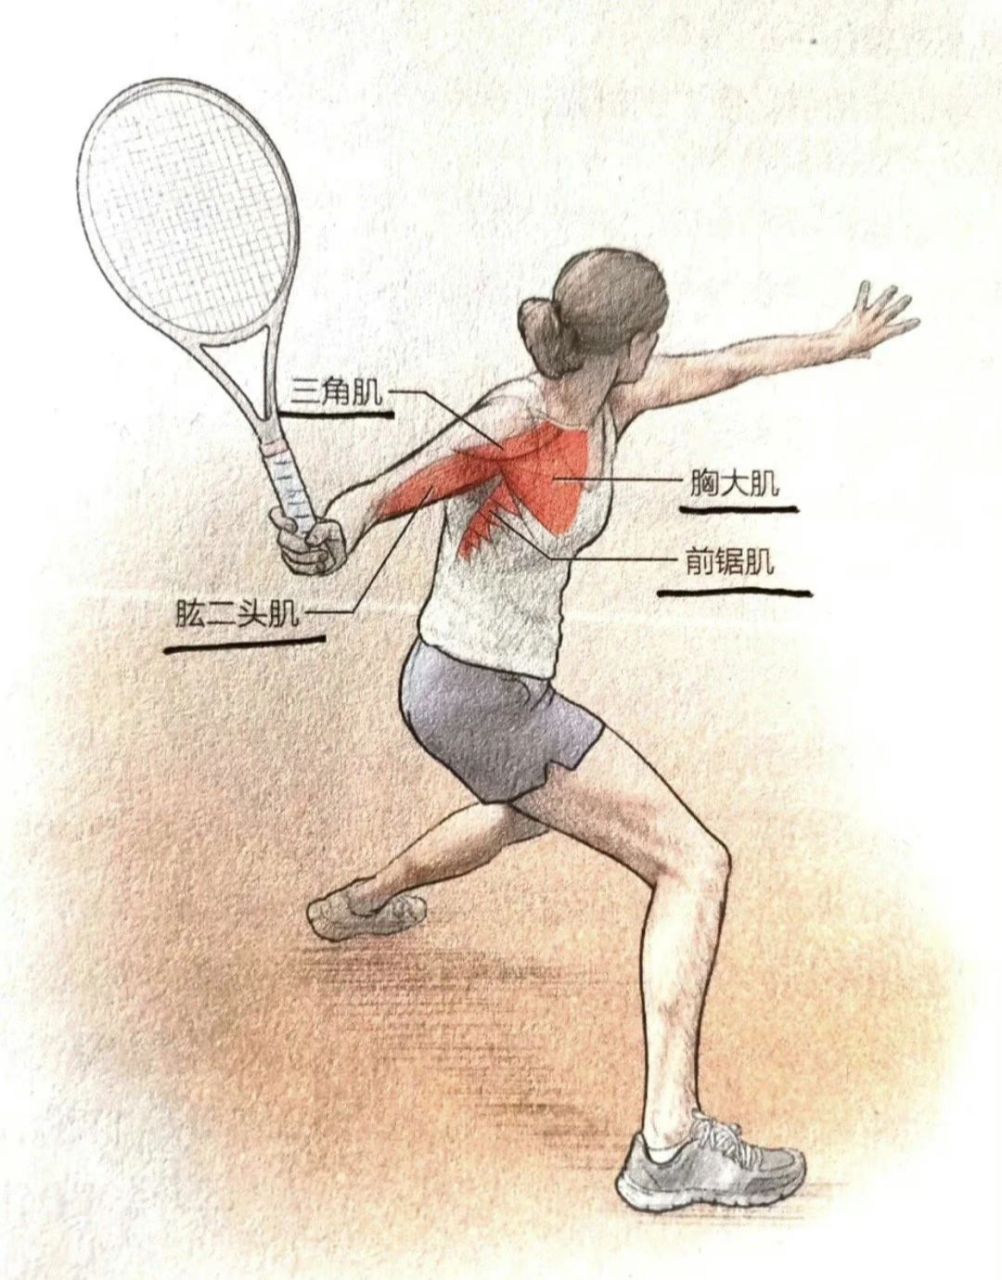 正手击球98 正手击球是网球运动中最重要的击球方式之一